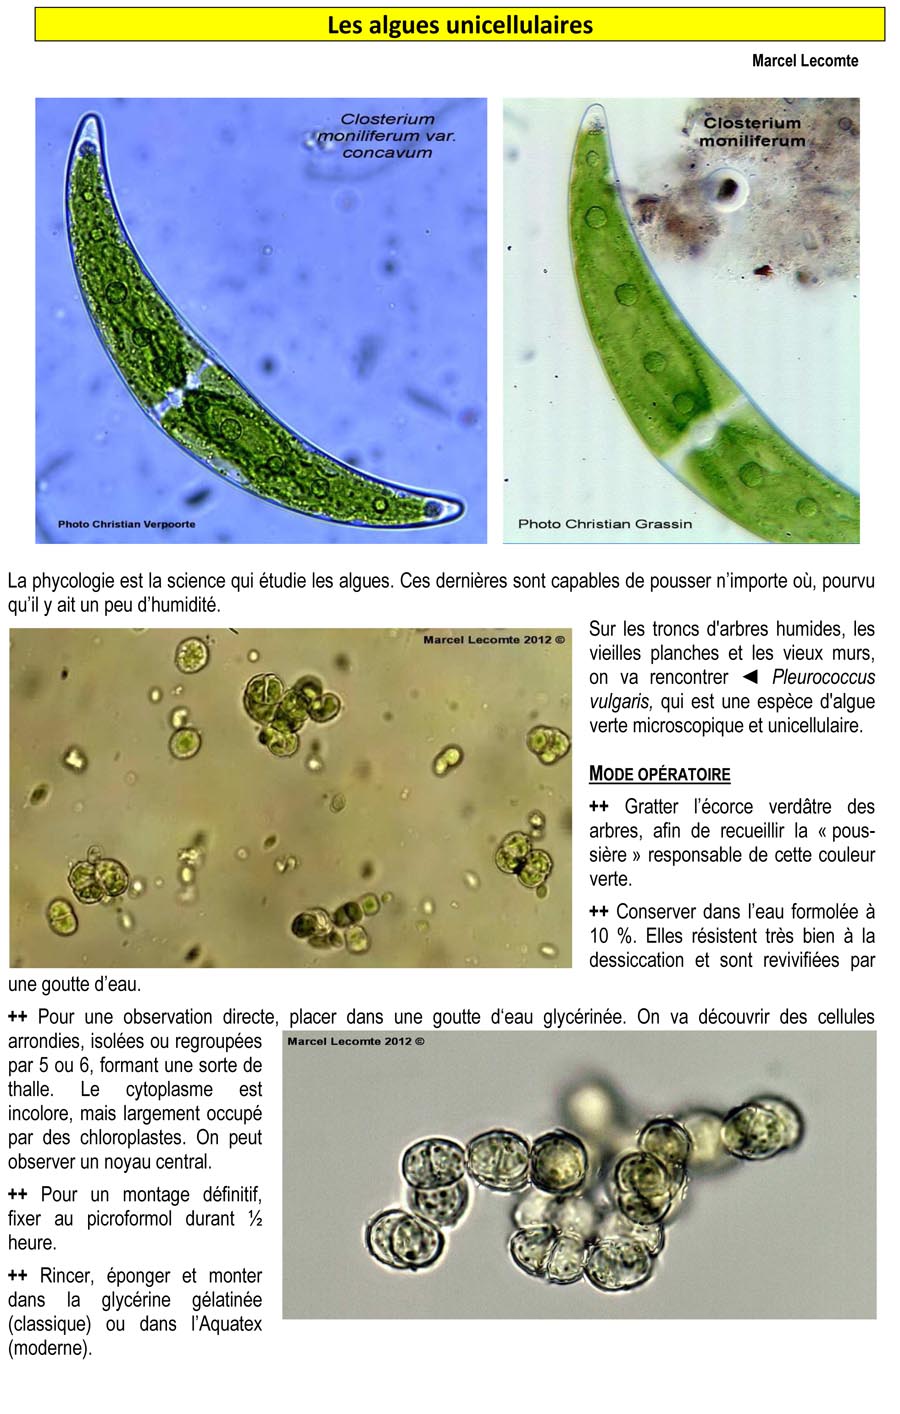 Les algues unicellulaires